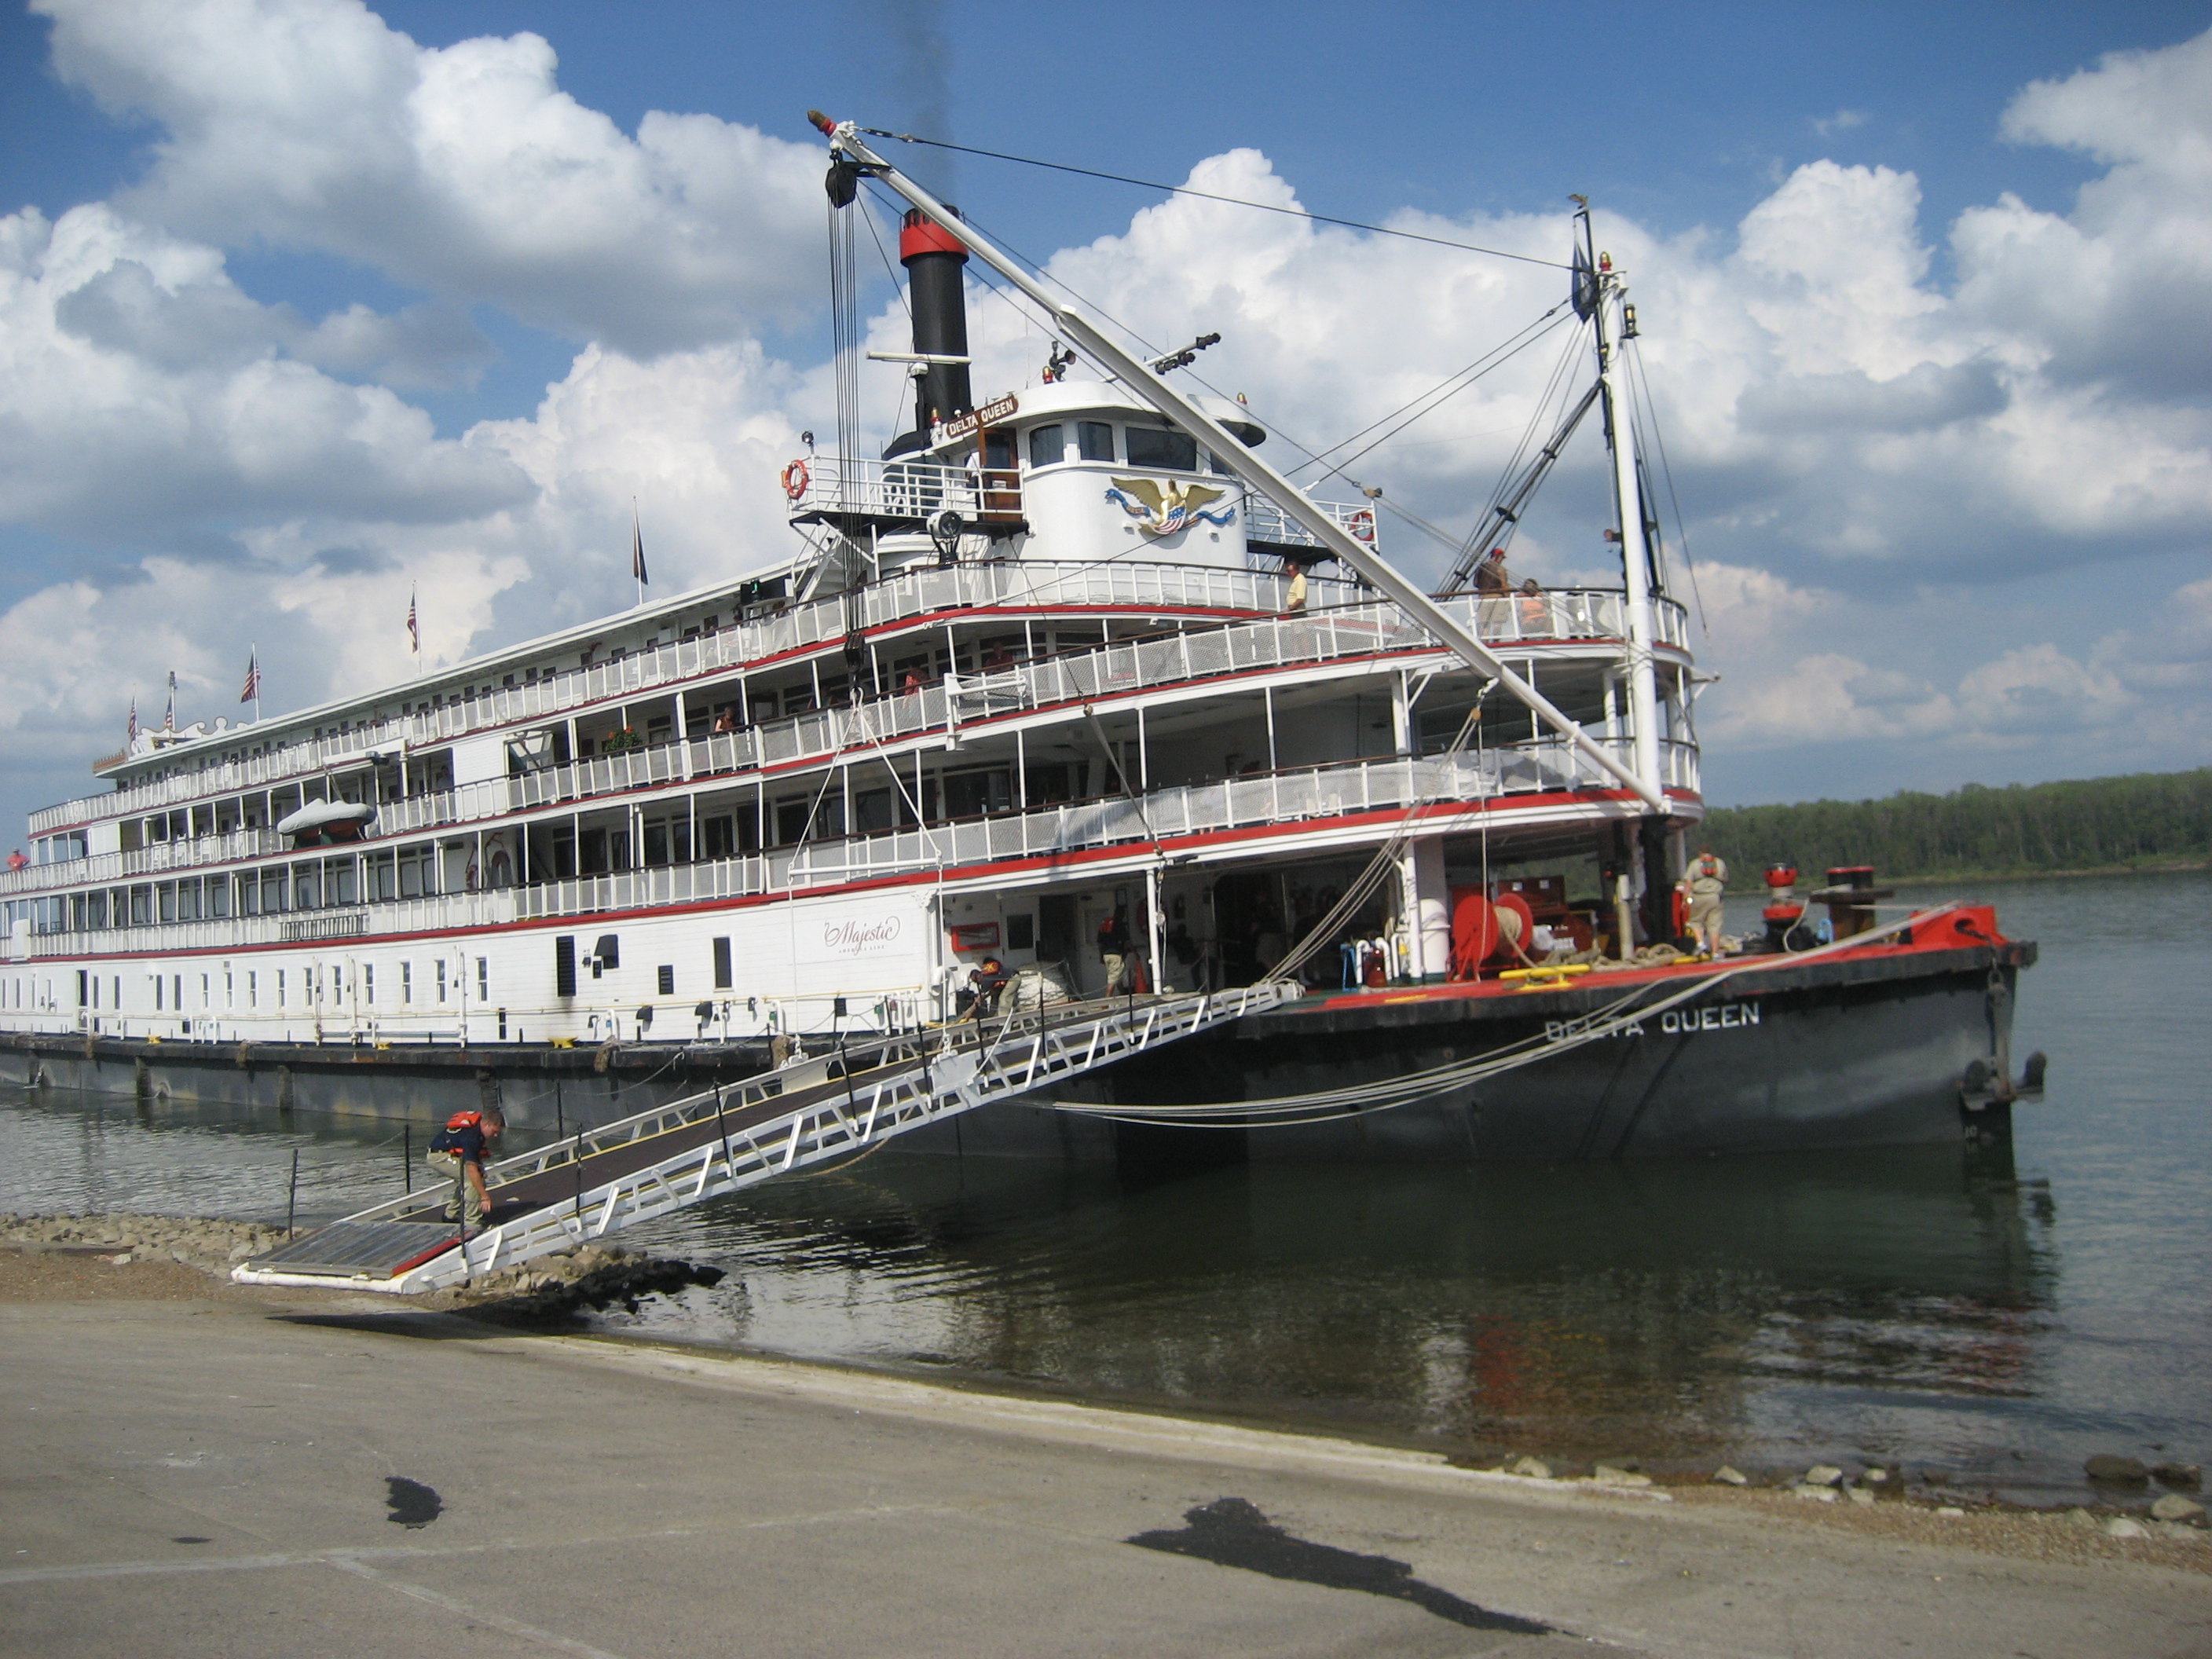 Хиль пароходы. Delta Queen пароход. Речной пароход Миссисипи. Mississippi Queen Steamboat 19 века. Речной флот Миссисипи.